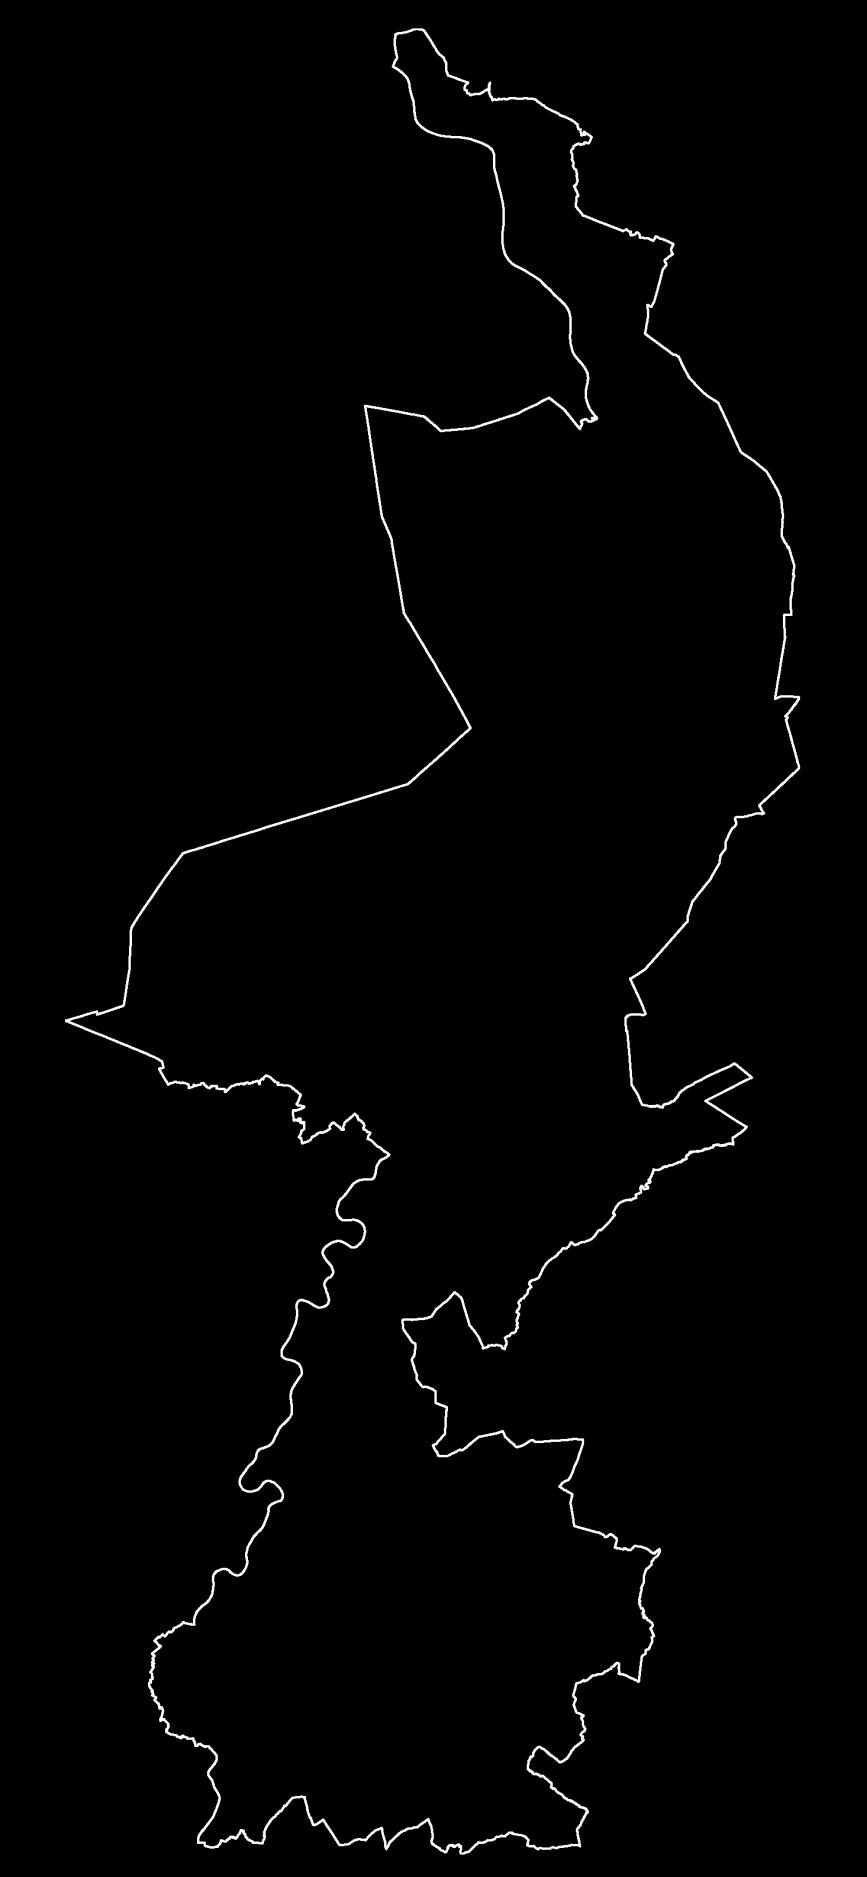 Figuur 3 Volumeverwerking, dit is een overzicht van alle rioolwaterzuiveringsinstallaties in Limburg. Hoe groter de cirkel, hoe groter de hydraulische belasting.